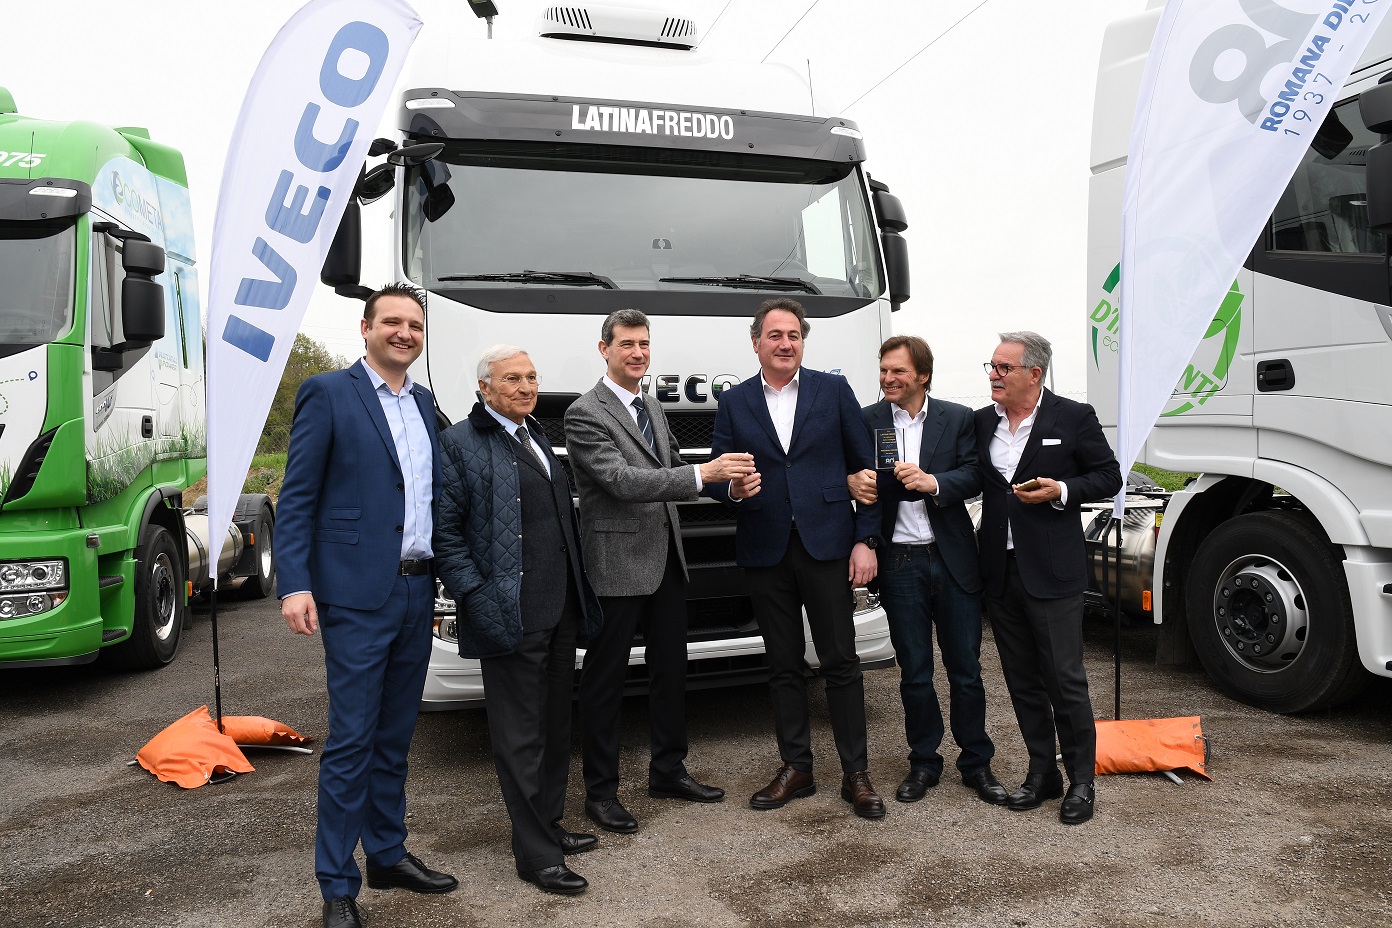 Camion: Iveco inaugura nella provincia di Roma la 20^ stazione LNG in Italia